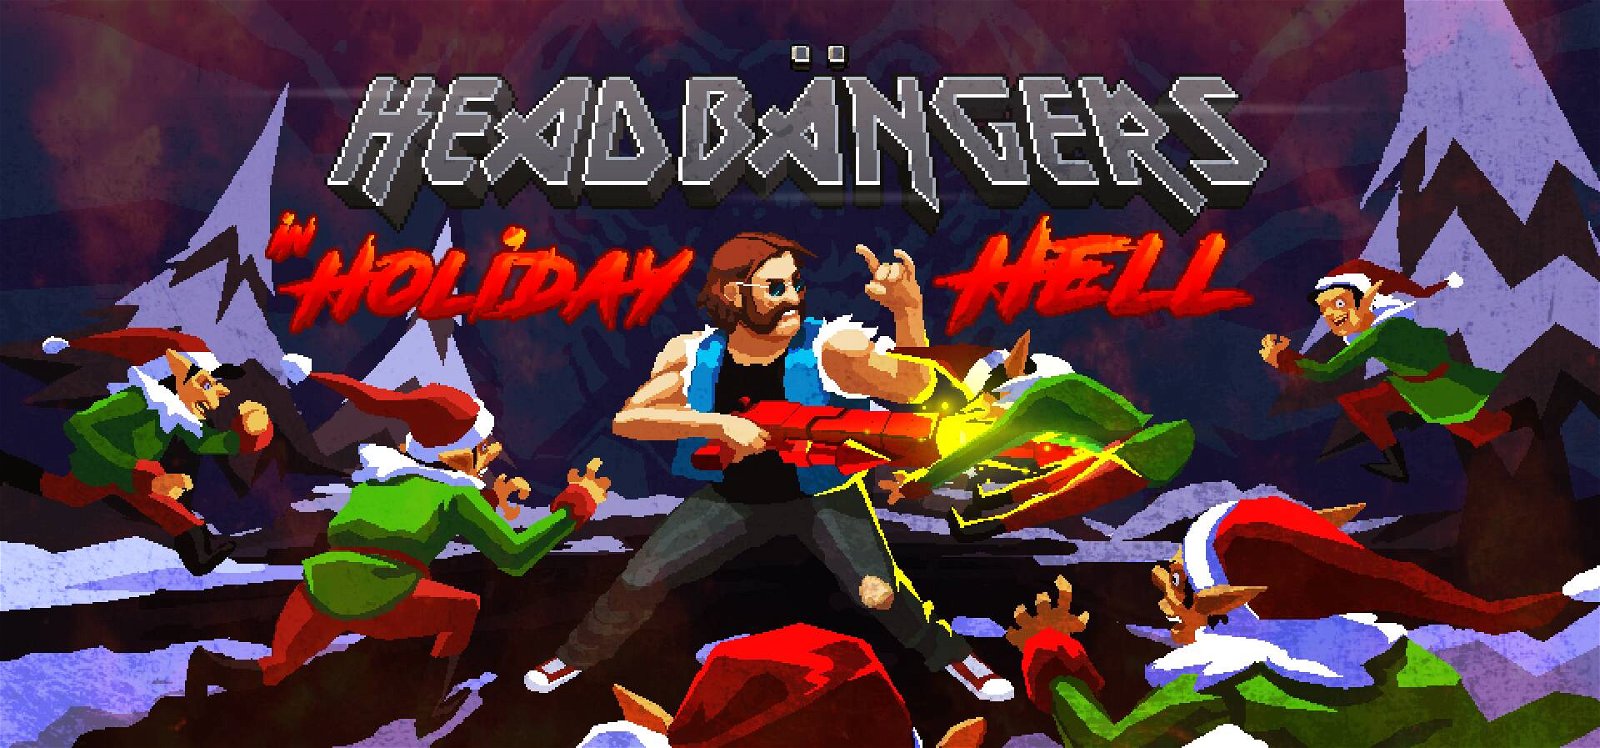 Immagine di Heabangers in Holiday Hell, un piccolo regalo di Natale in salsa metal